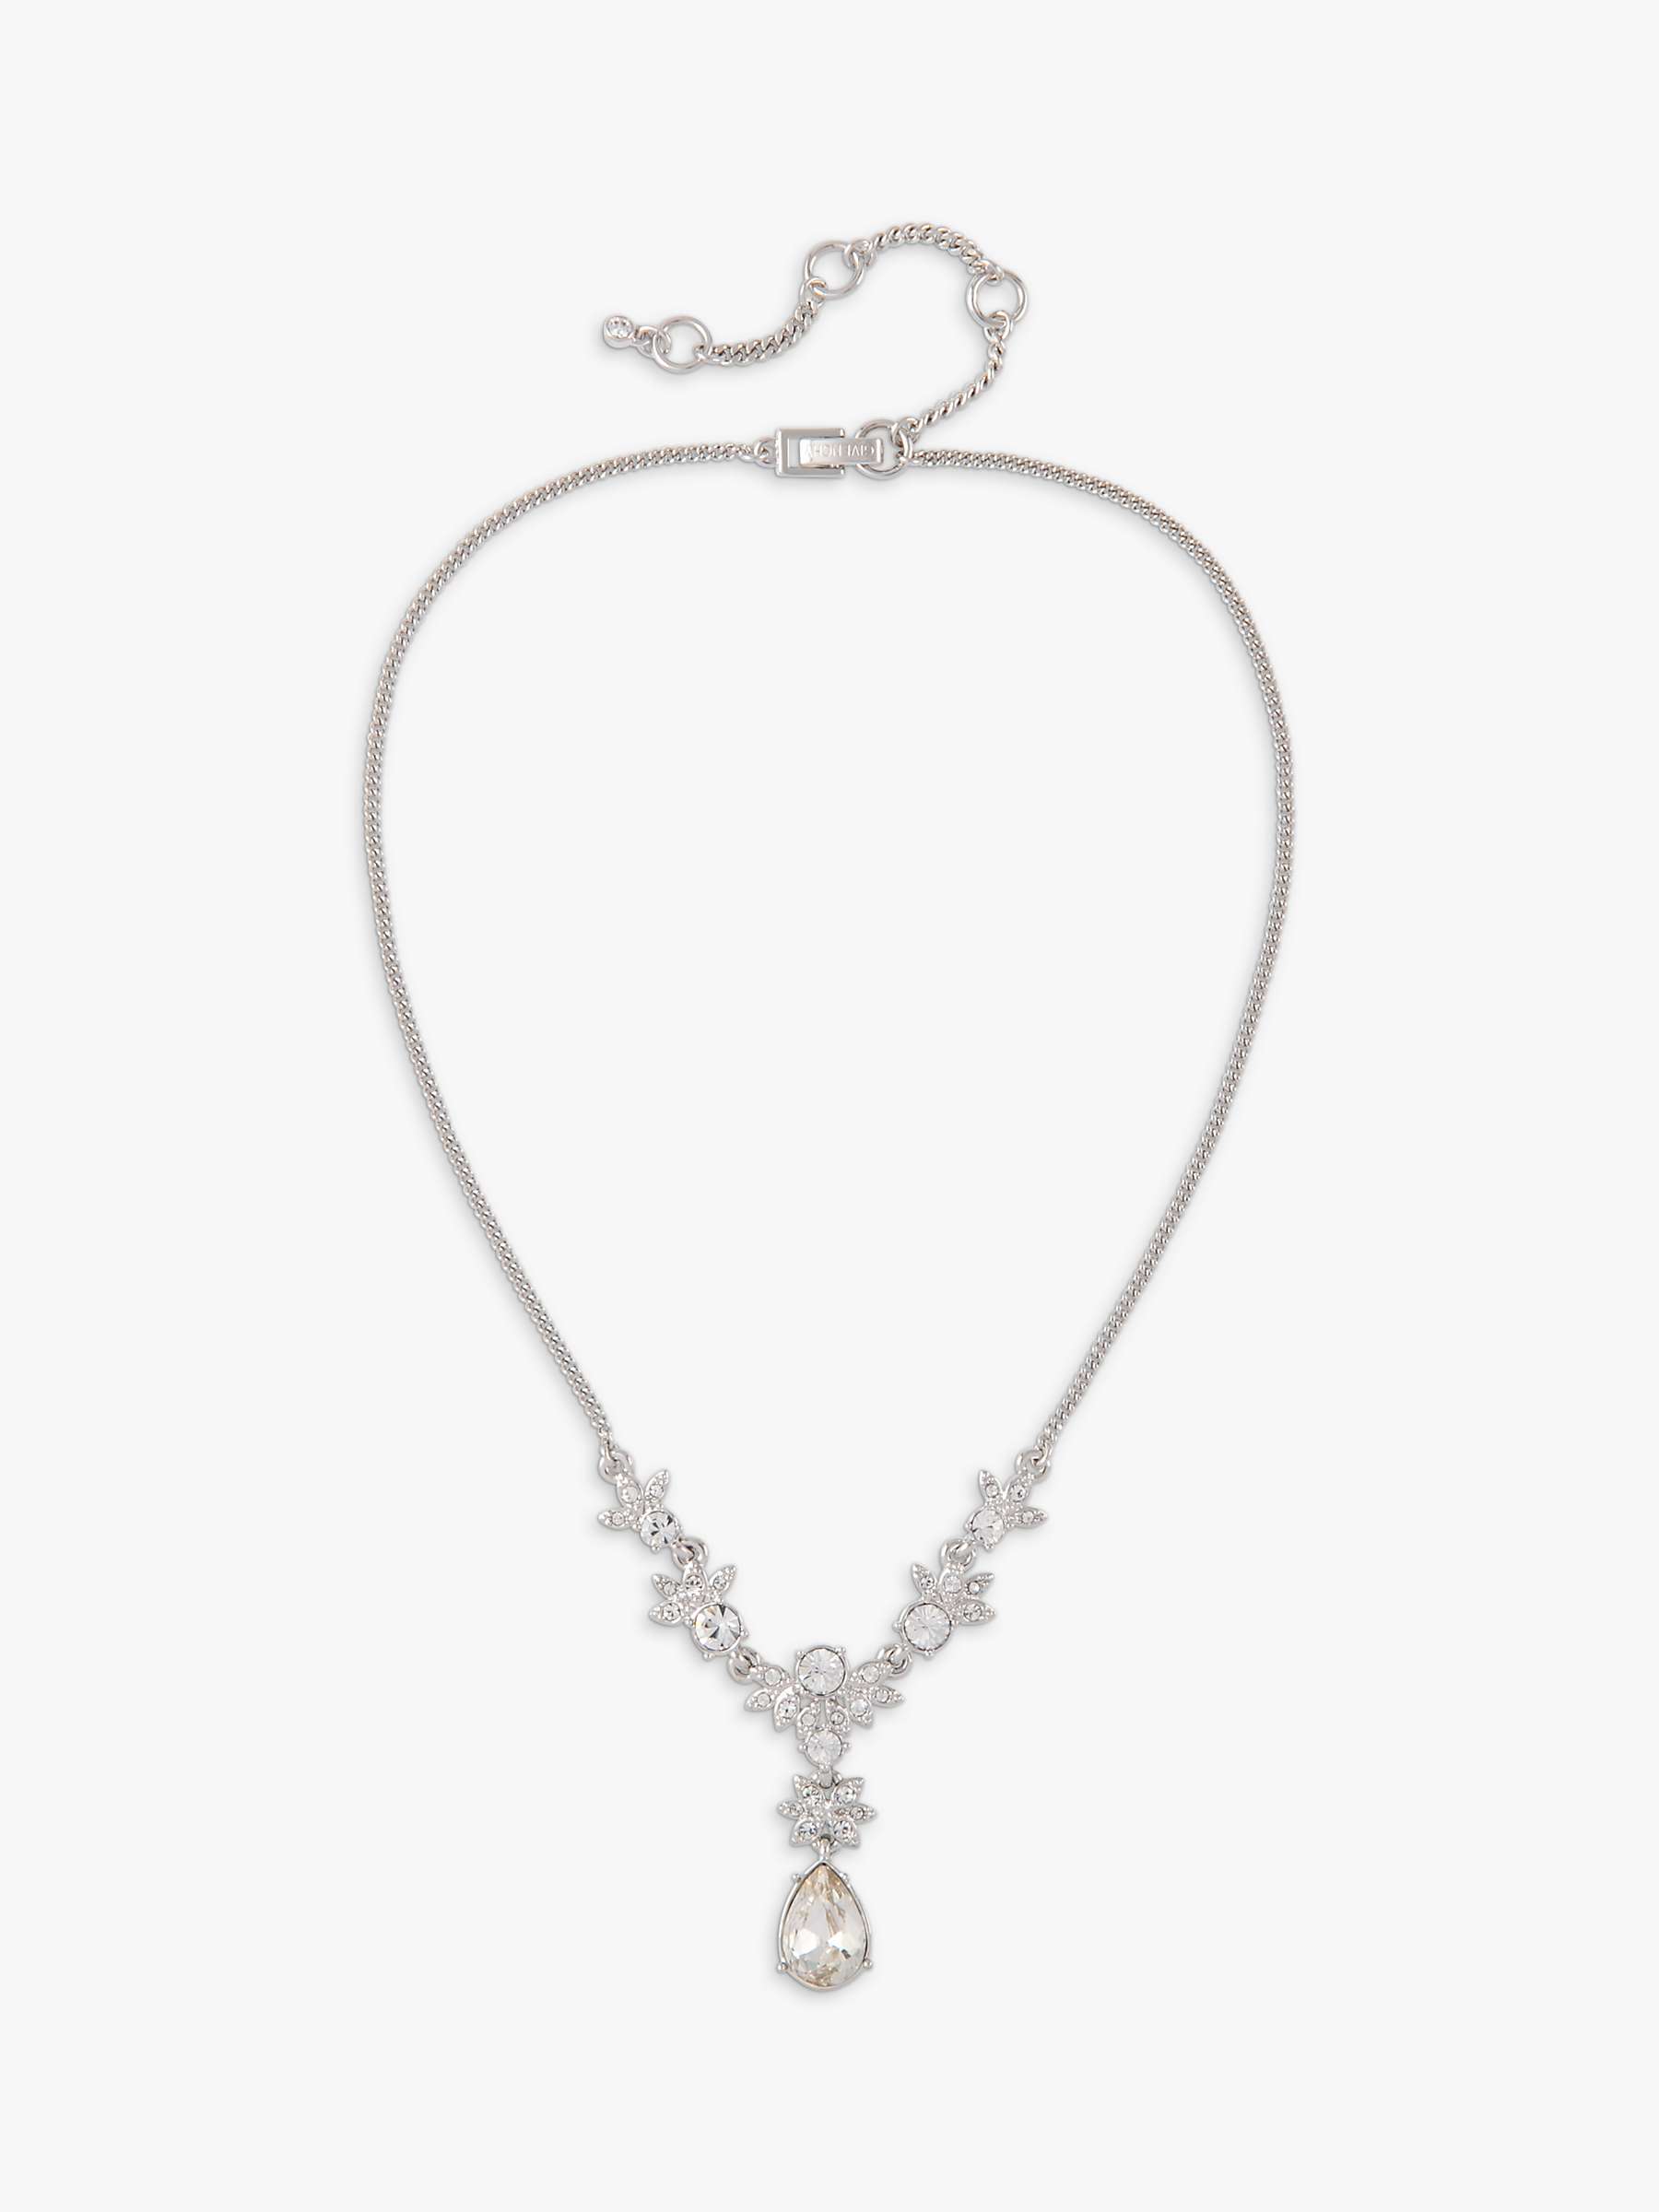 Buy Susan Caplan Vintage Givenchy Swarovski Crystal Pendant Necklace, Silver Online at johnlewis.com